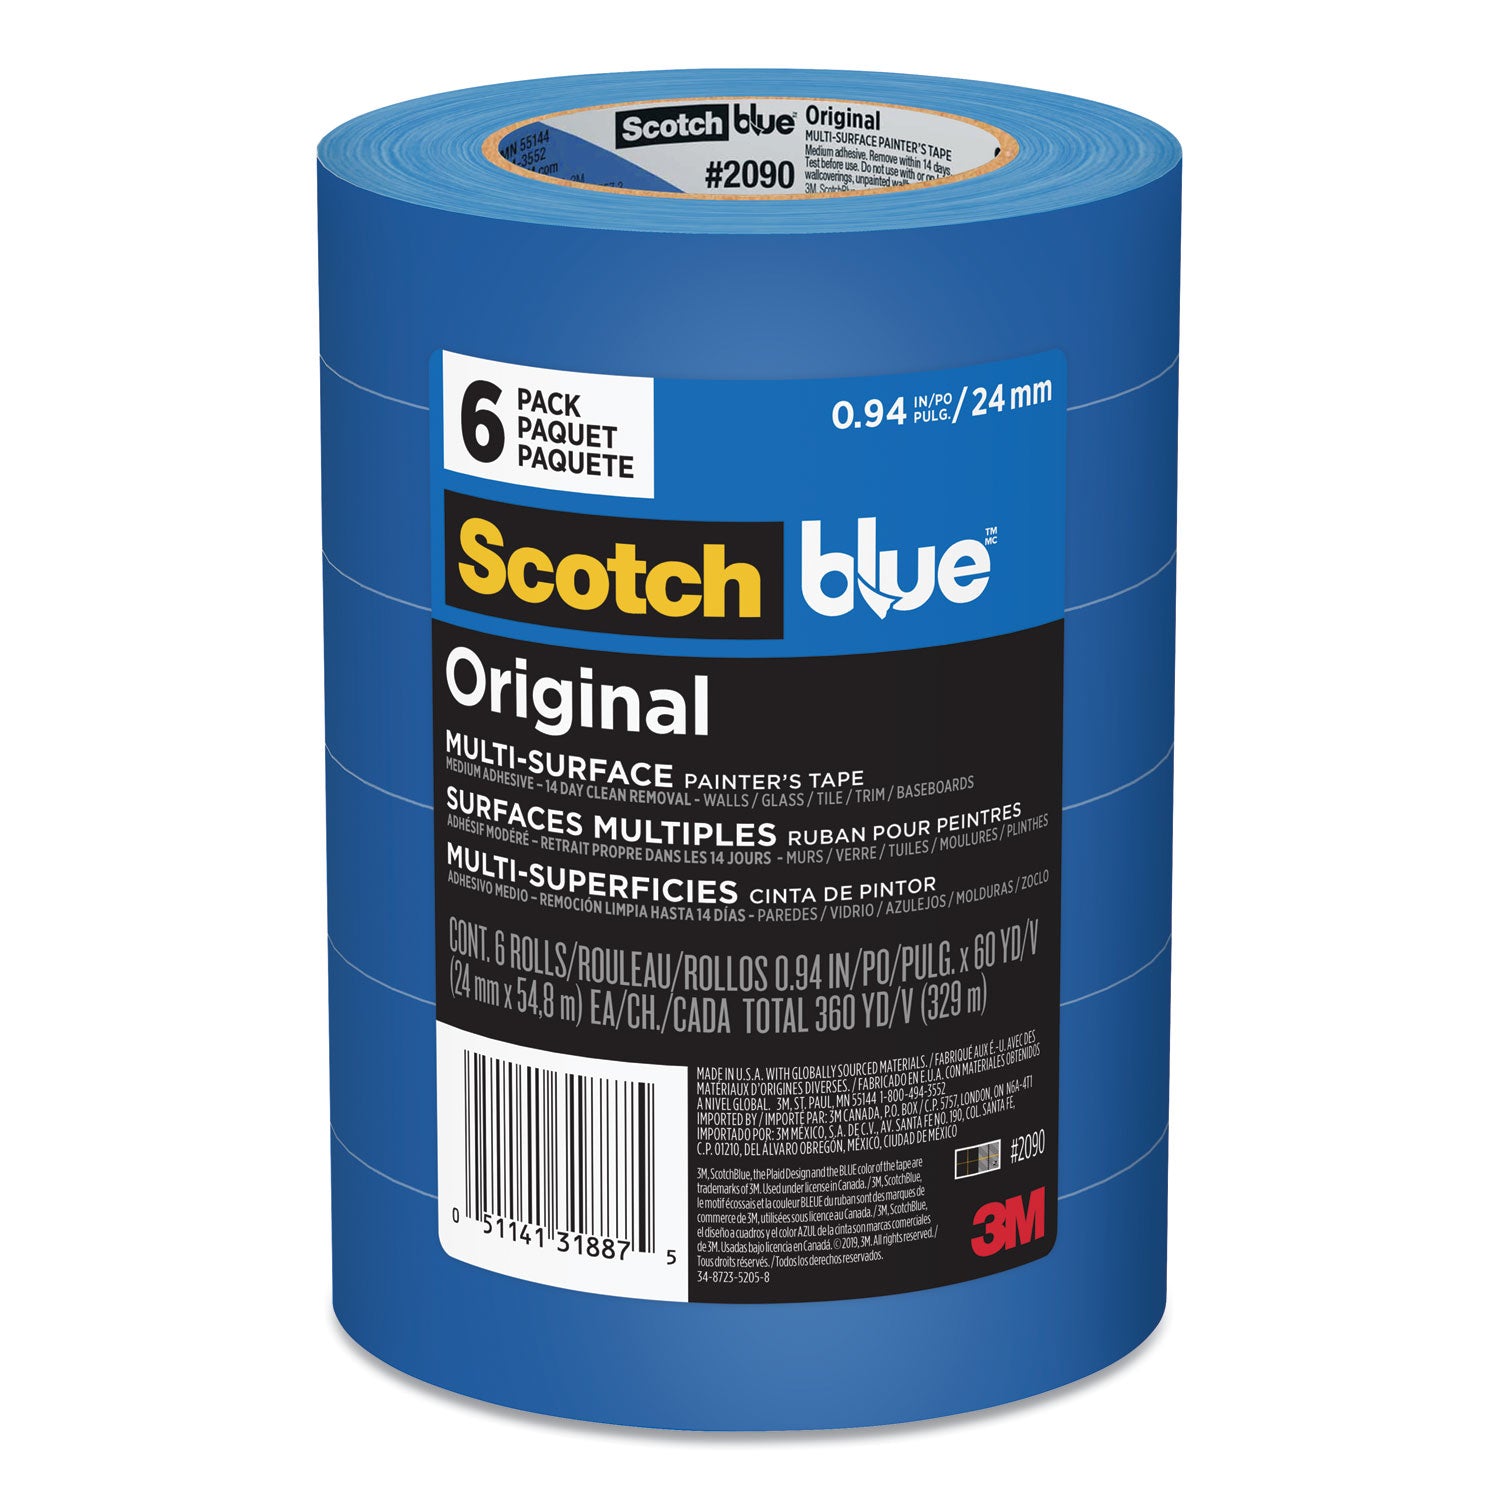 Original Multi-Surface Painter's Tape, 3" Core, 0.94" x 60 yds, Blue, 6/Pack - 